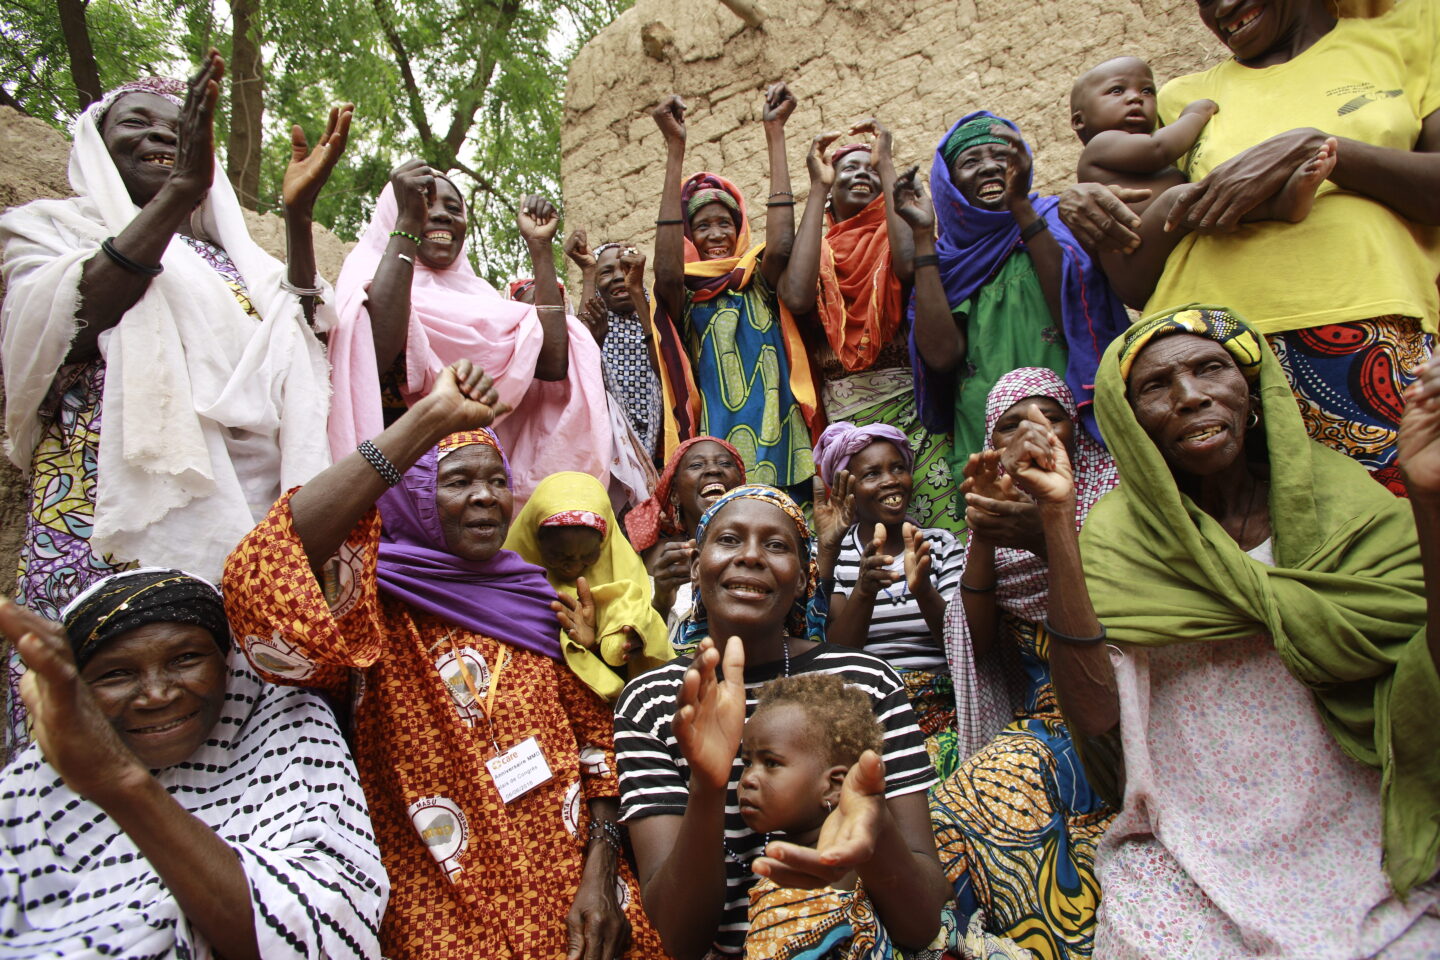 L'association CARE aide les femmes à sortir de la pauvreté dans le monde, comme ici au Niger